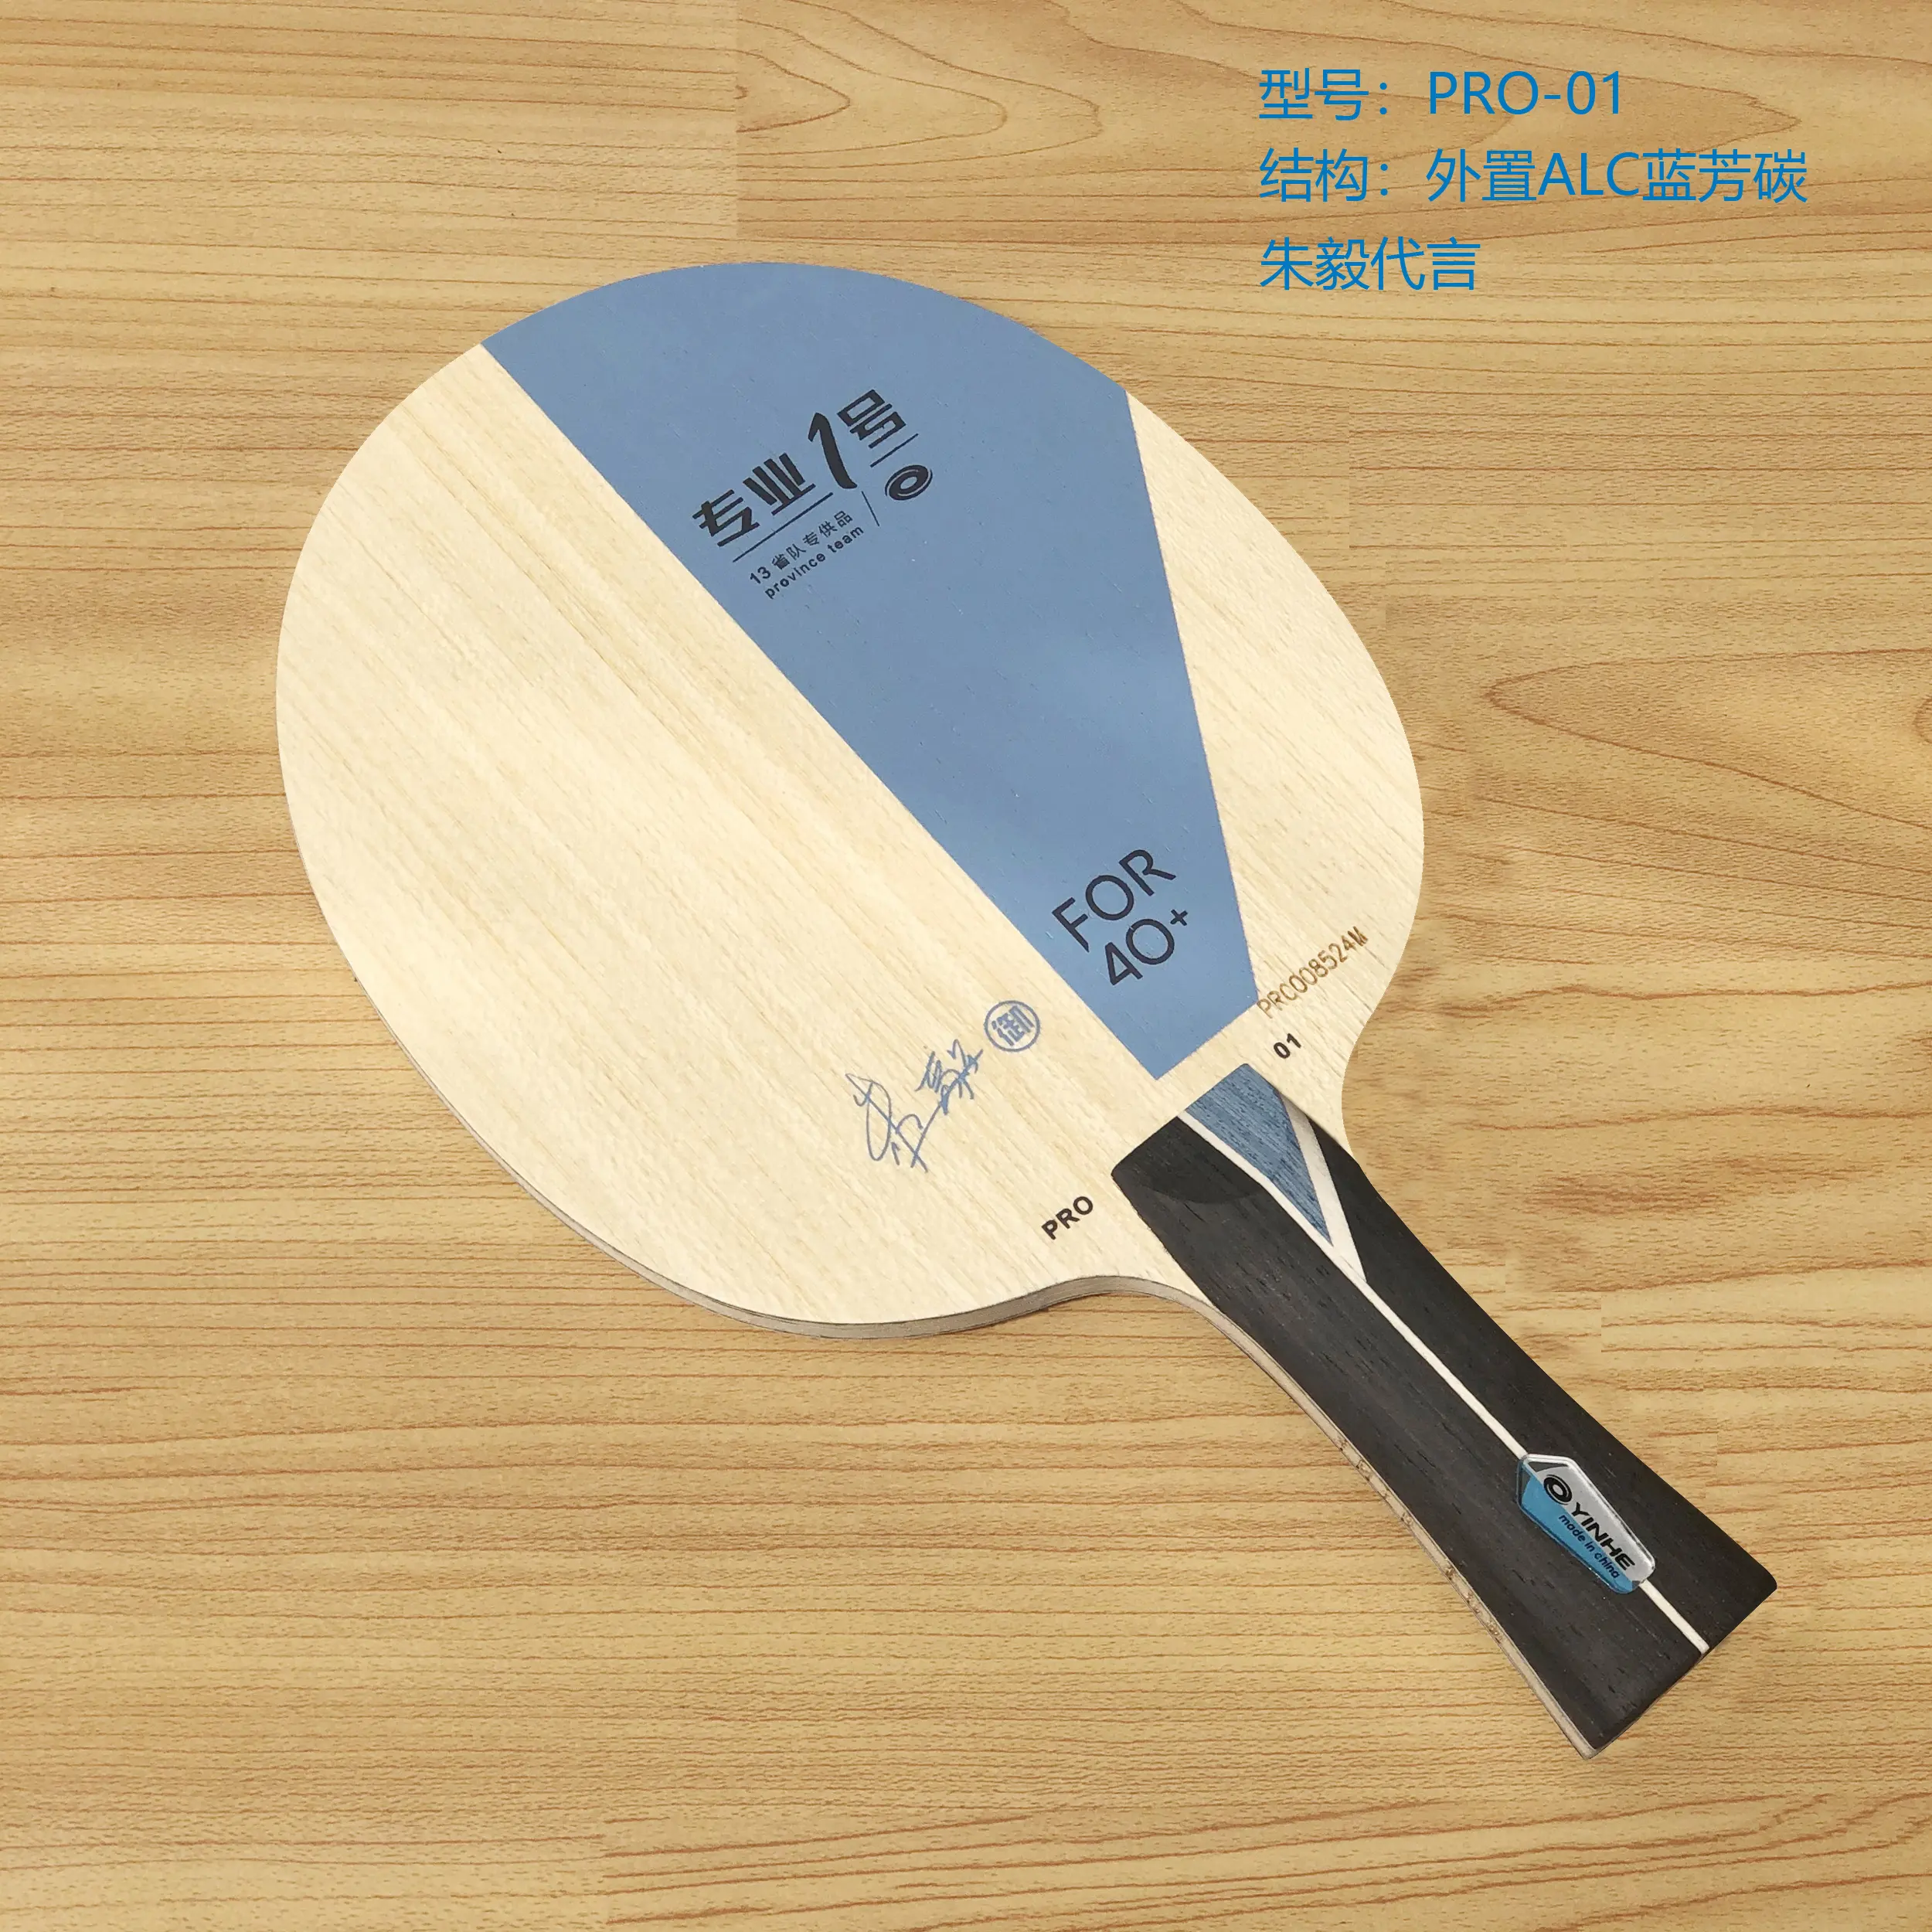 Yinhe-raqueta de ping pong Pro-01, raqueta de tenis de mesa, fibra de carbono, granos, bajo precio, venta al por mayor